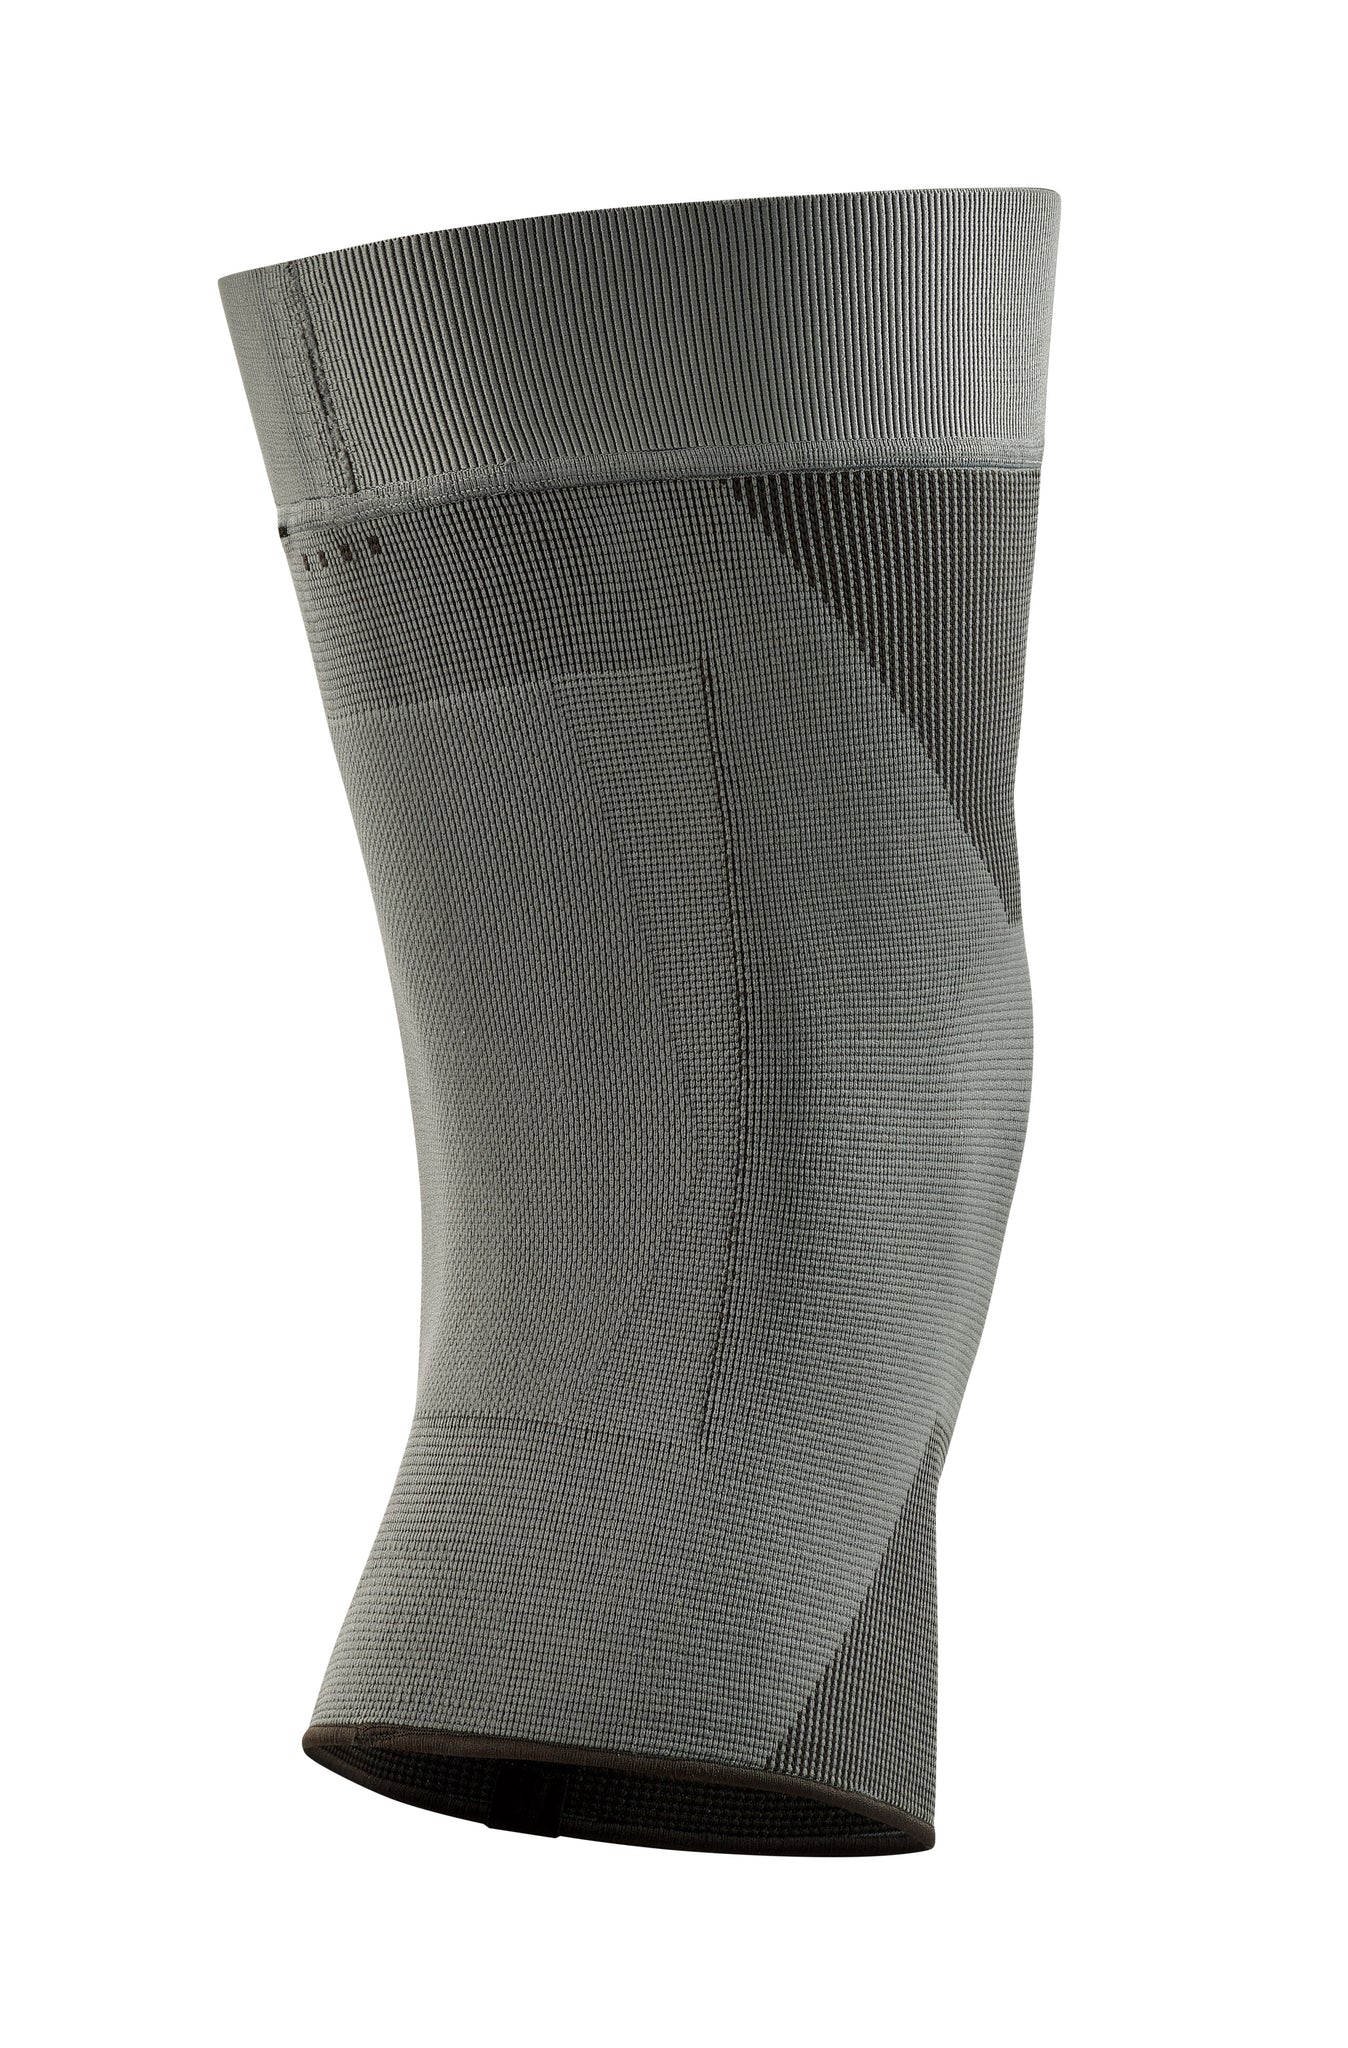 Multi-Compression Knee Support - SafeTGard